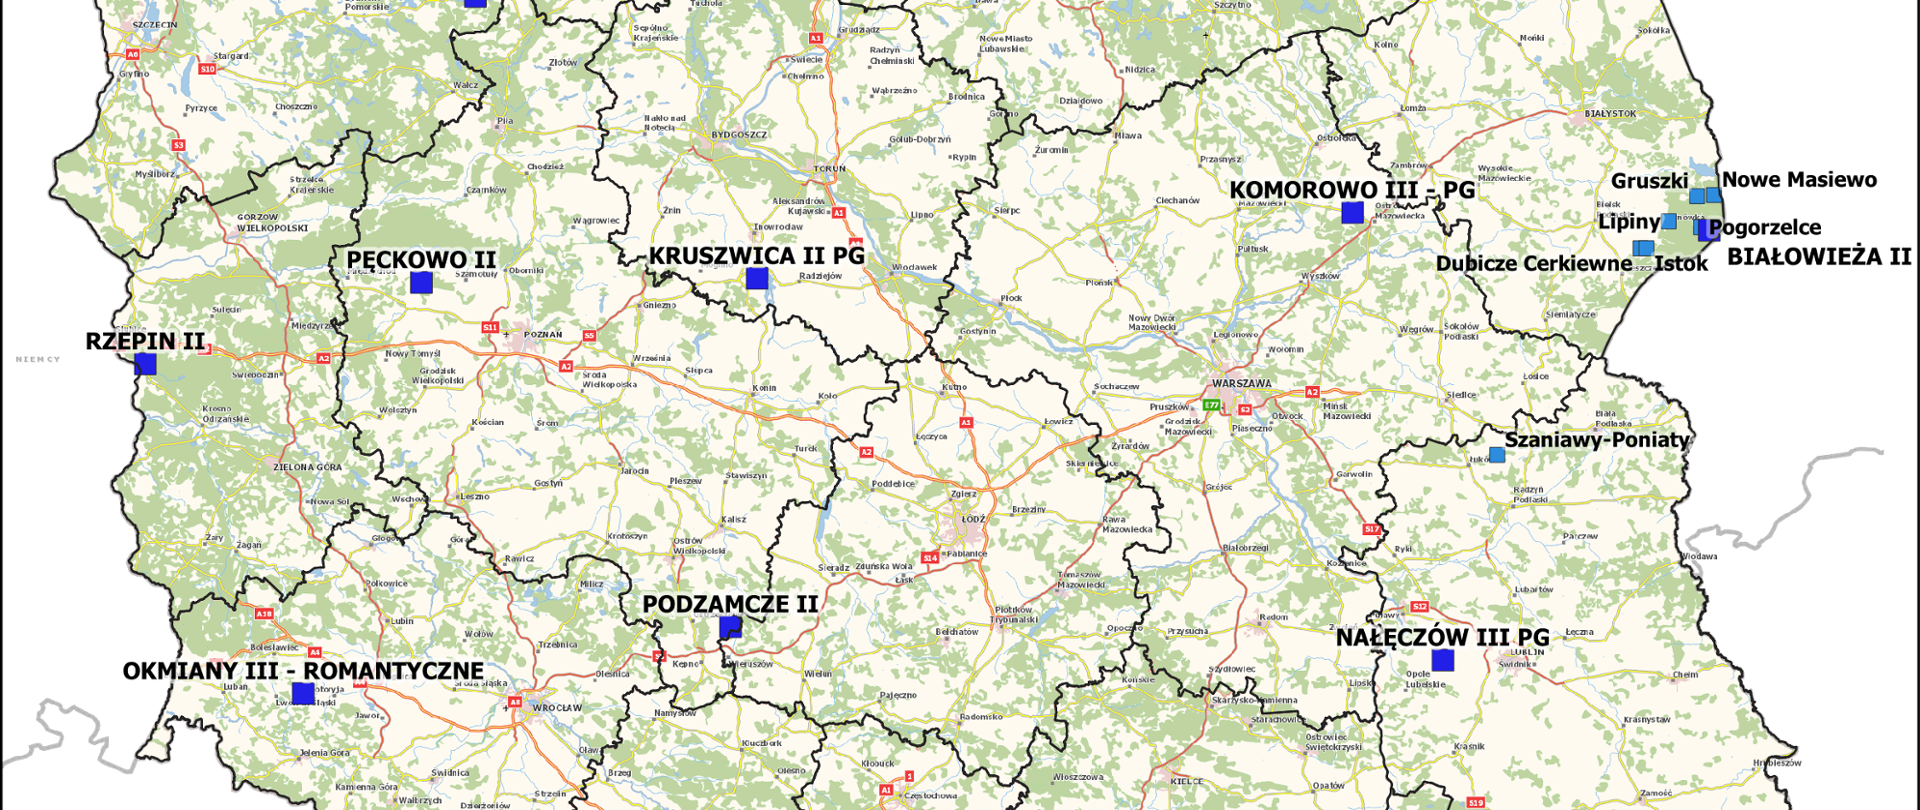 Ilustracja przedstawia mapę Polski z punktami osnowy magnetycznej, na których wykonane zostały pomiary w ramach zakończonej pracy